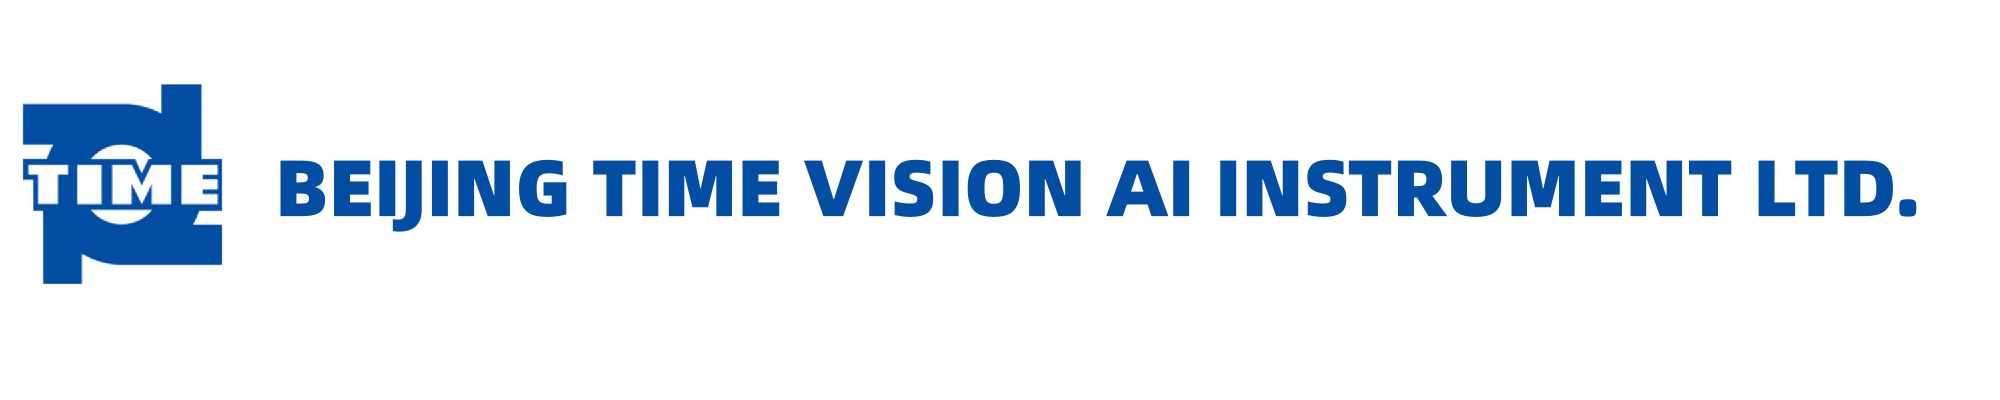 เวลาปักกิ่ง Vision AI Instrument Ltd.